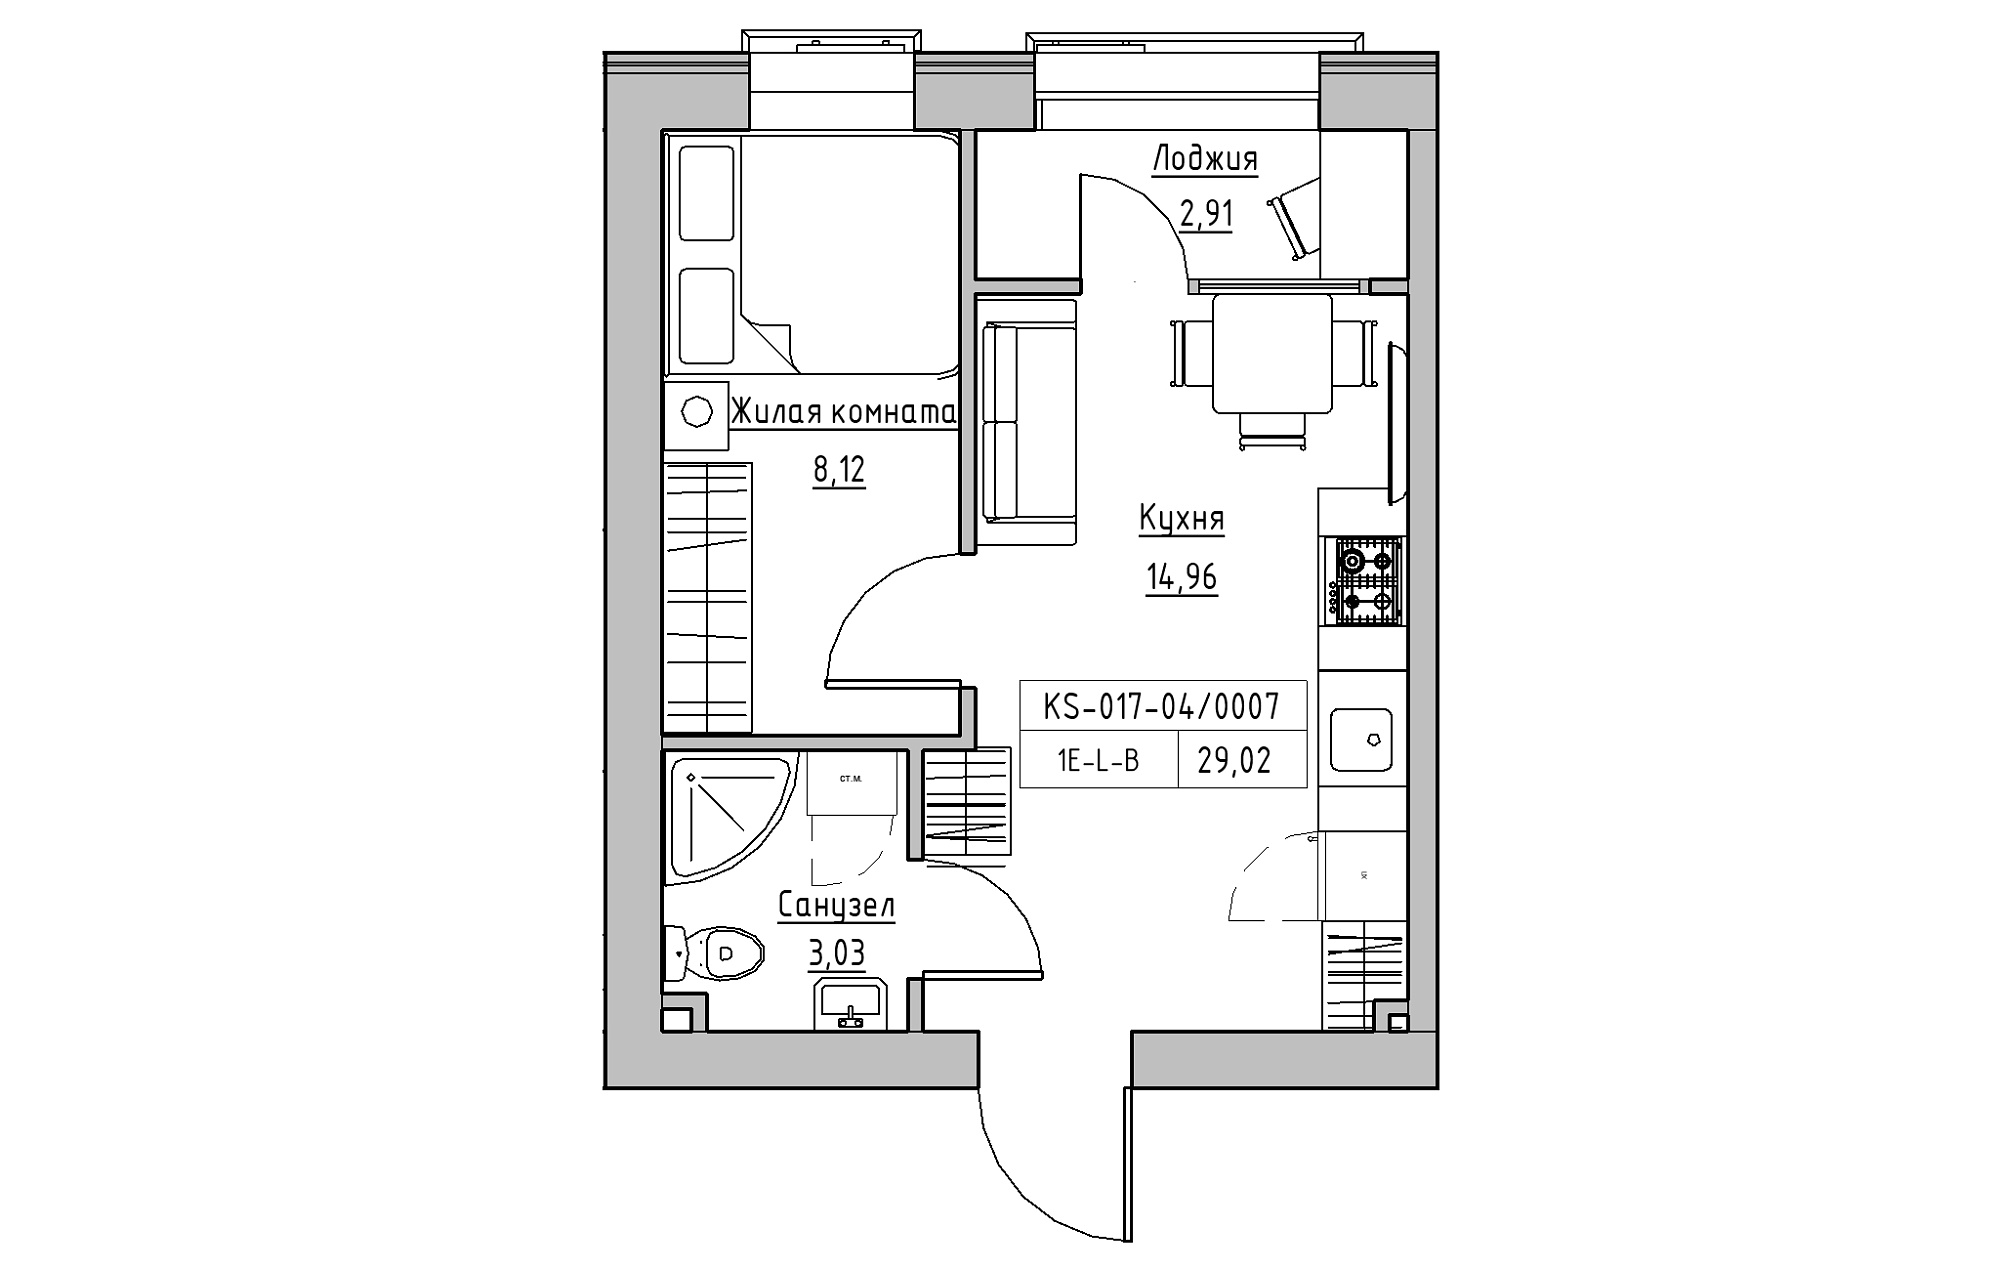 Планировка 1-к квартира площей 29.02м2, KS-017-04/0007.